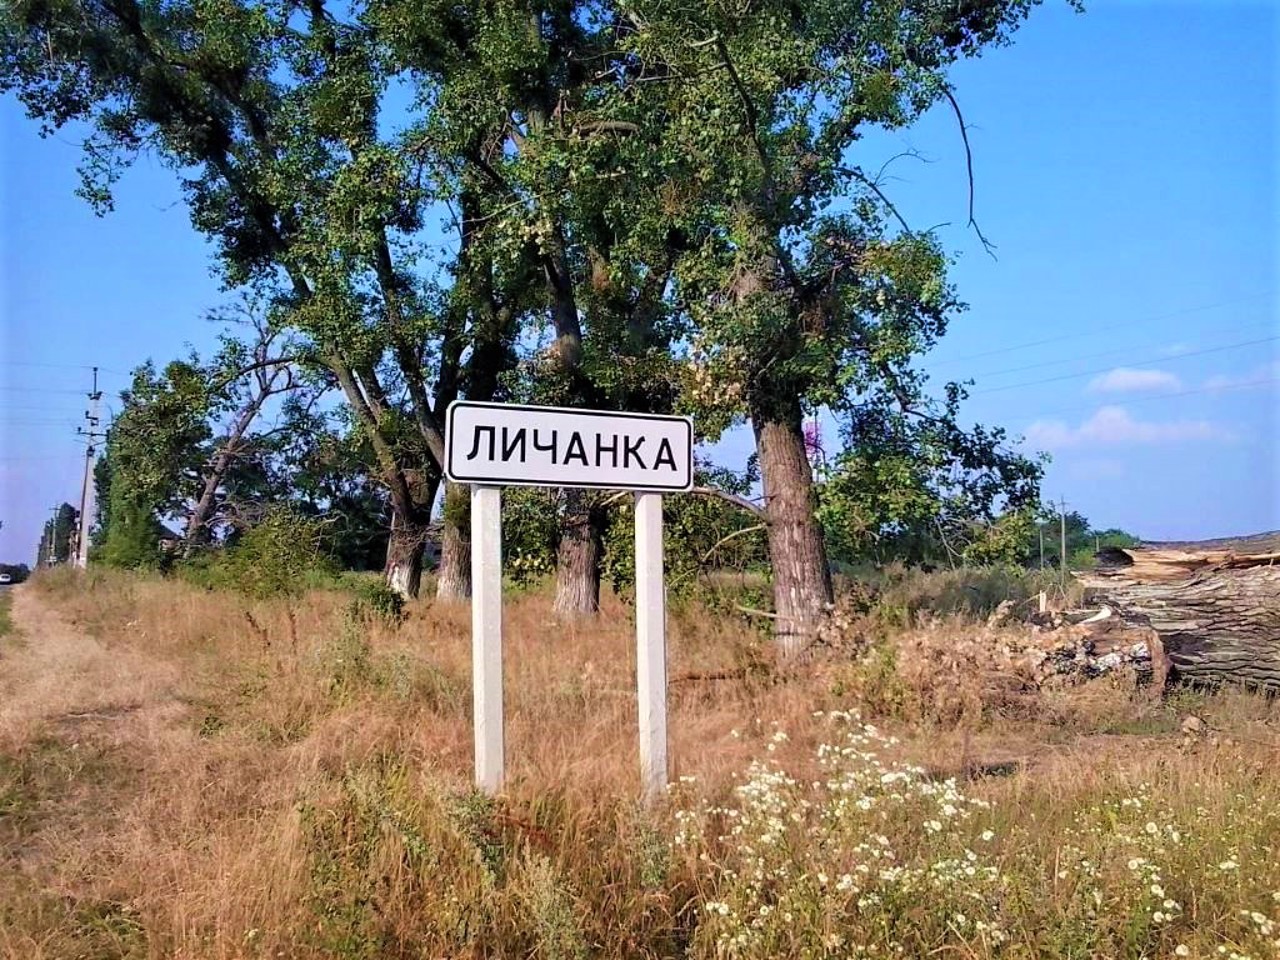 Lychanka village